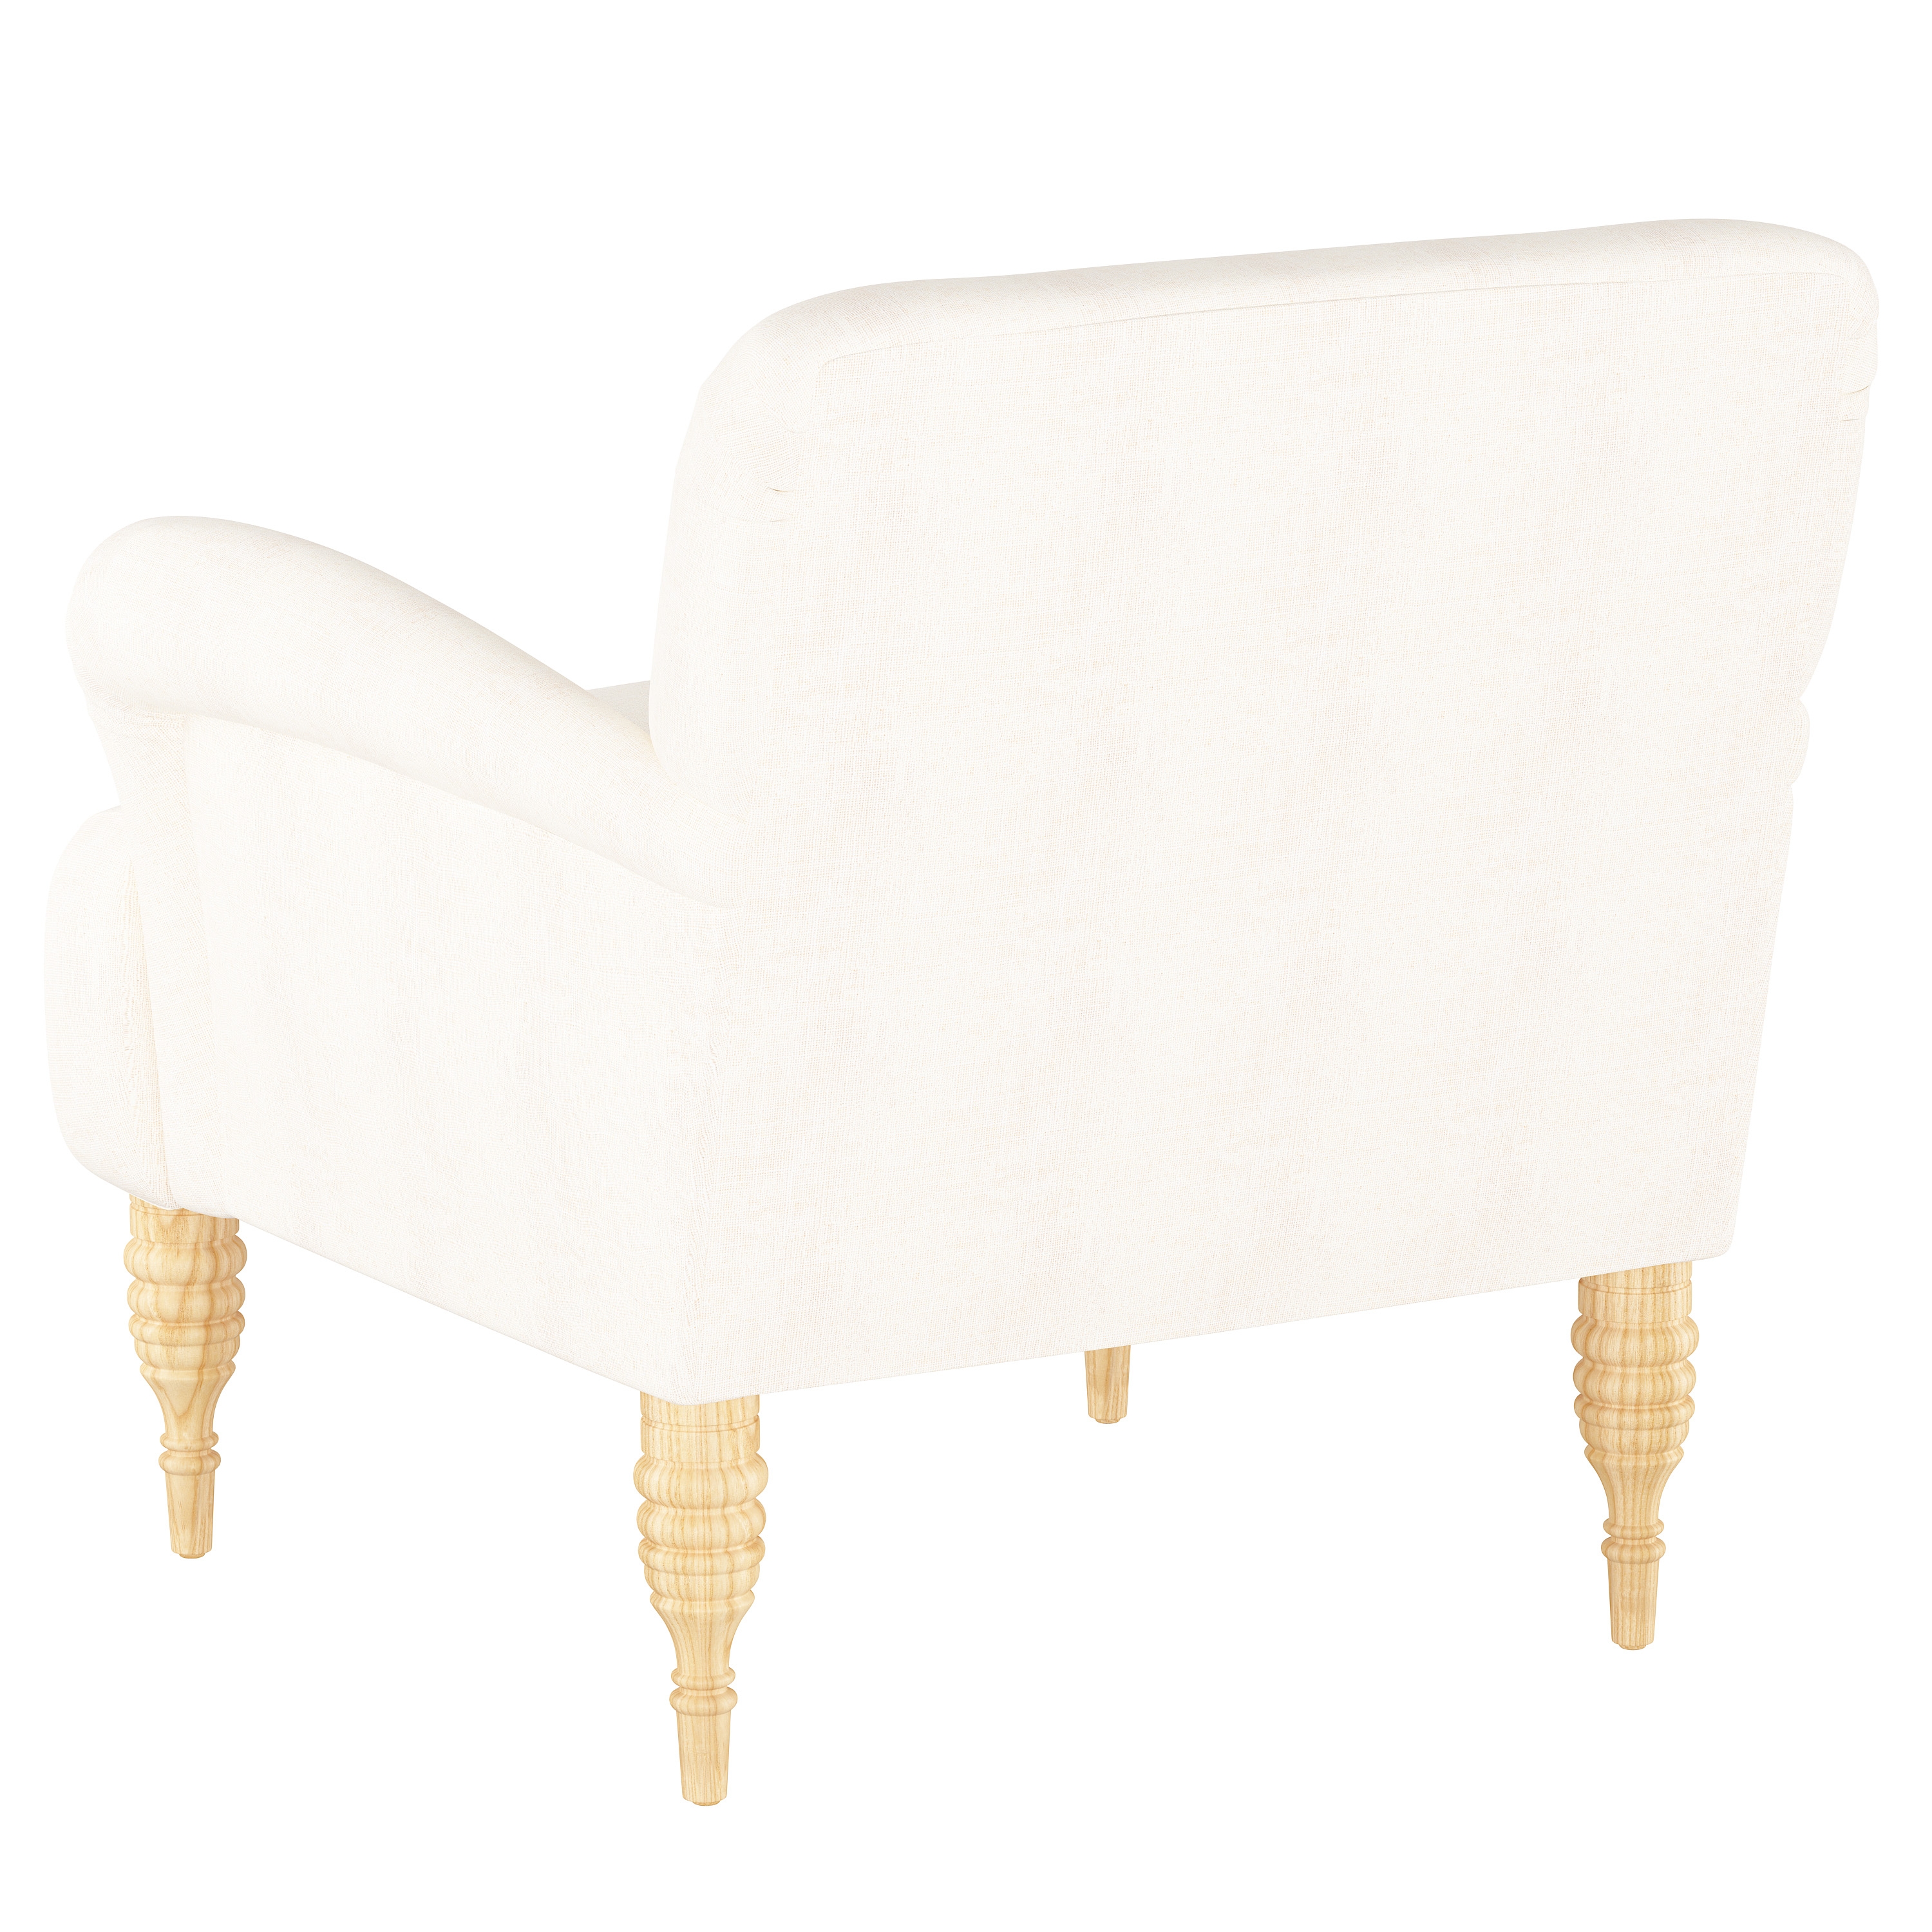 Merrill Chair, White - Image 3